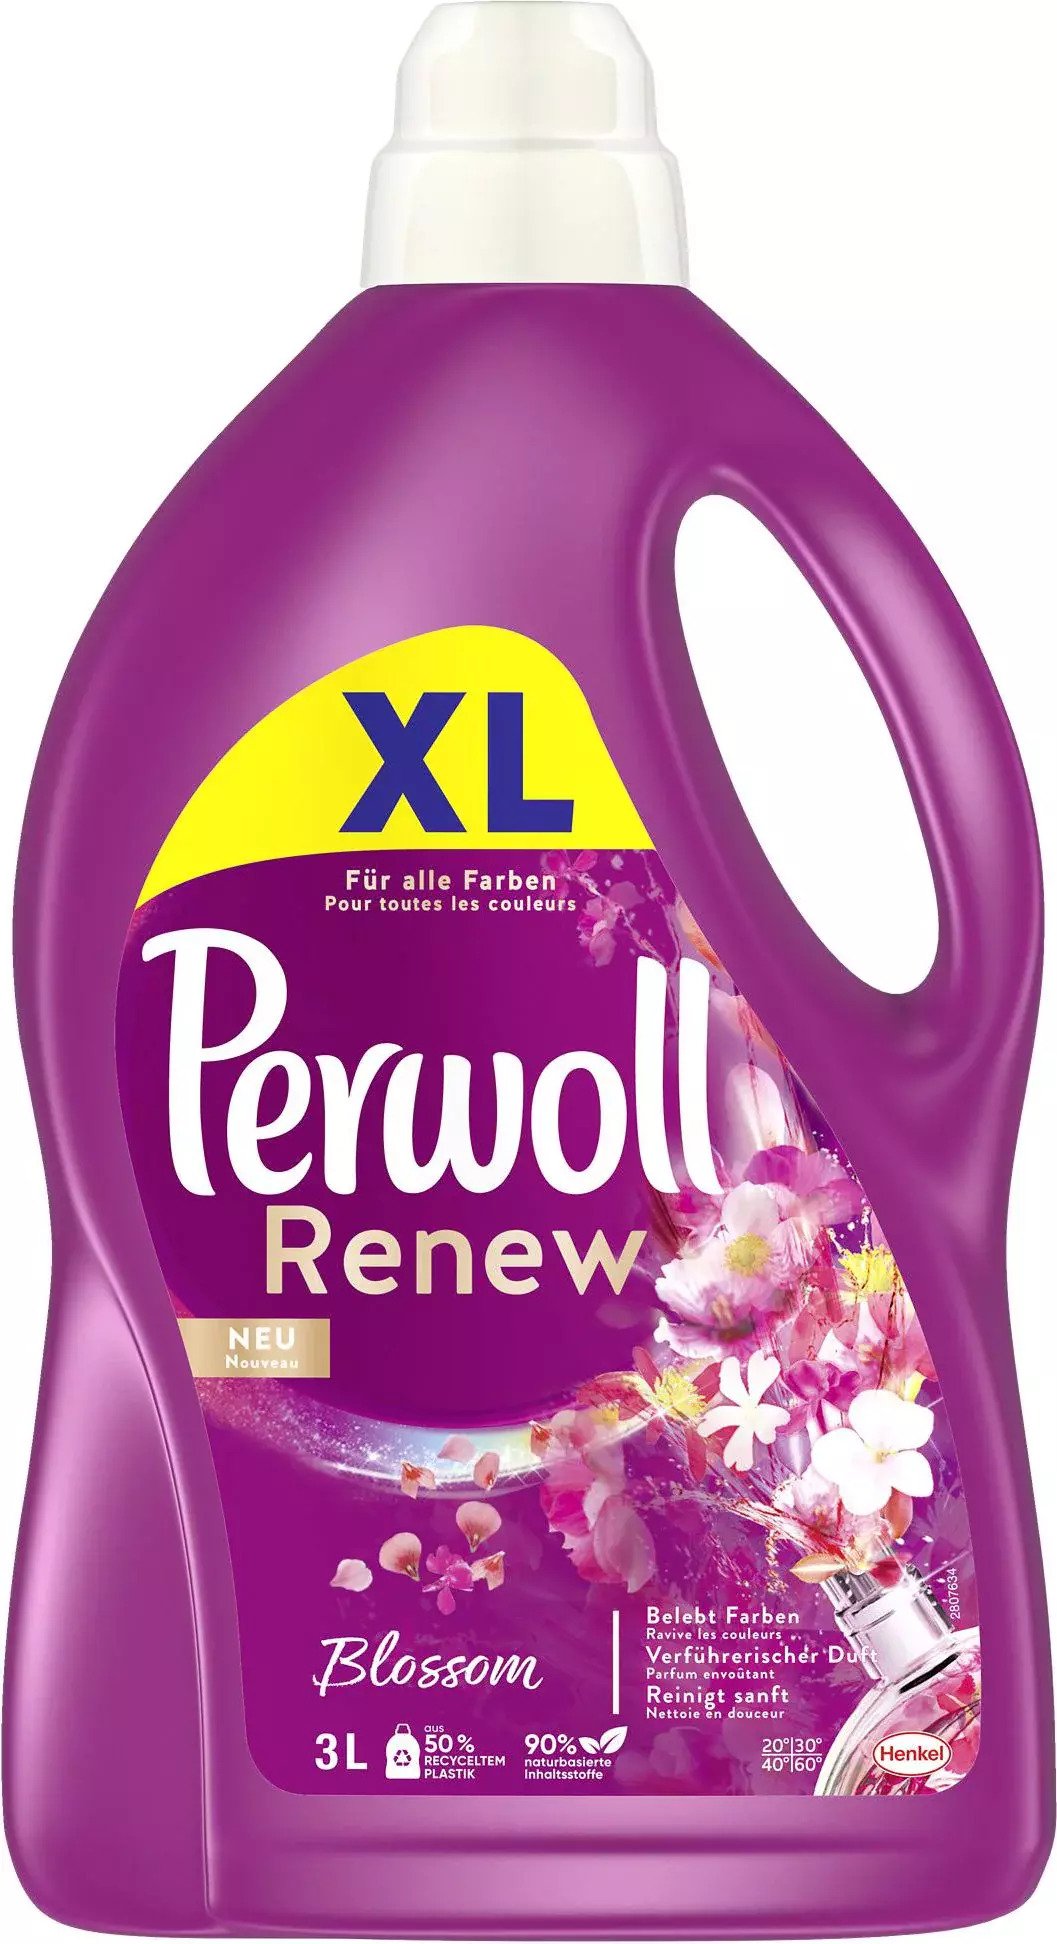 Perwoll Renew Blossom Gel 50p 3L